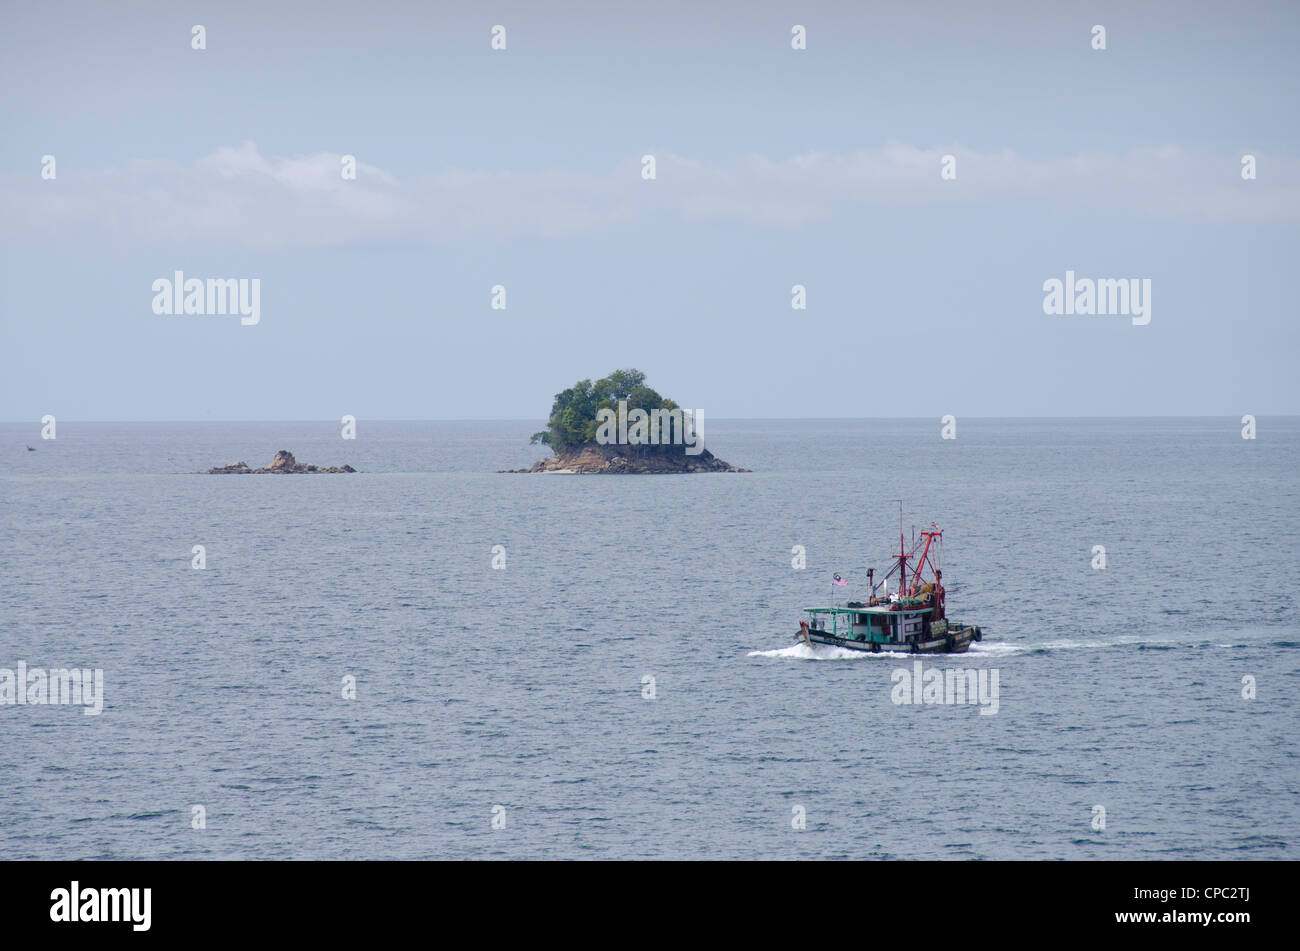 La Malaisie, l'île de Bornéo, de l'état de Sabah, Kota Kinabalu. bateau de pêche traditionnel orang en face de petite île. Banque D'Images